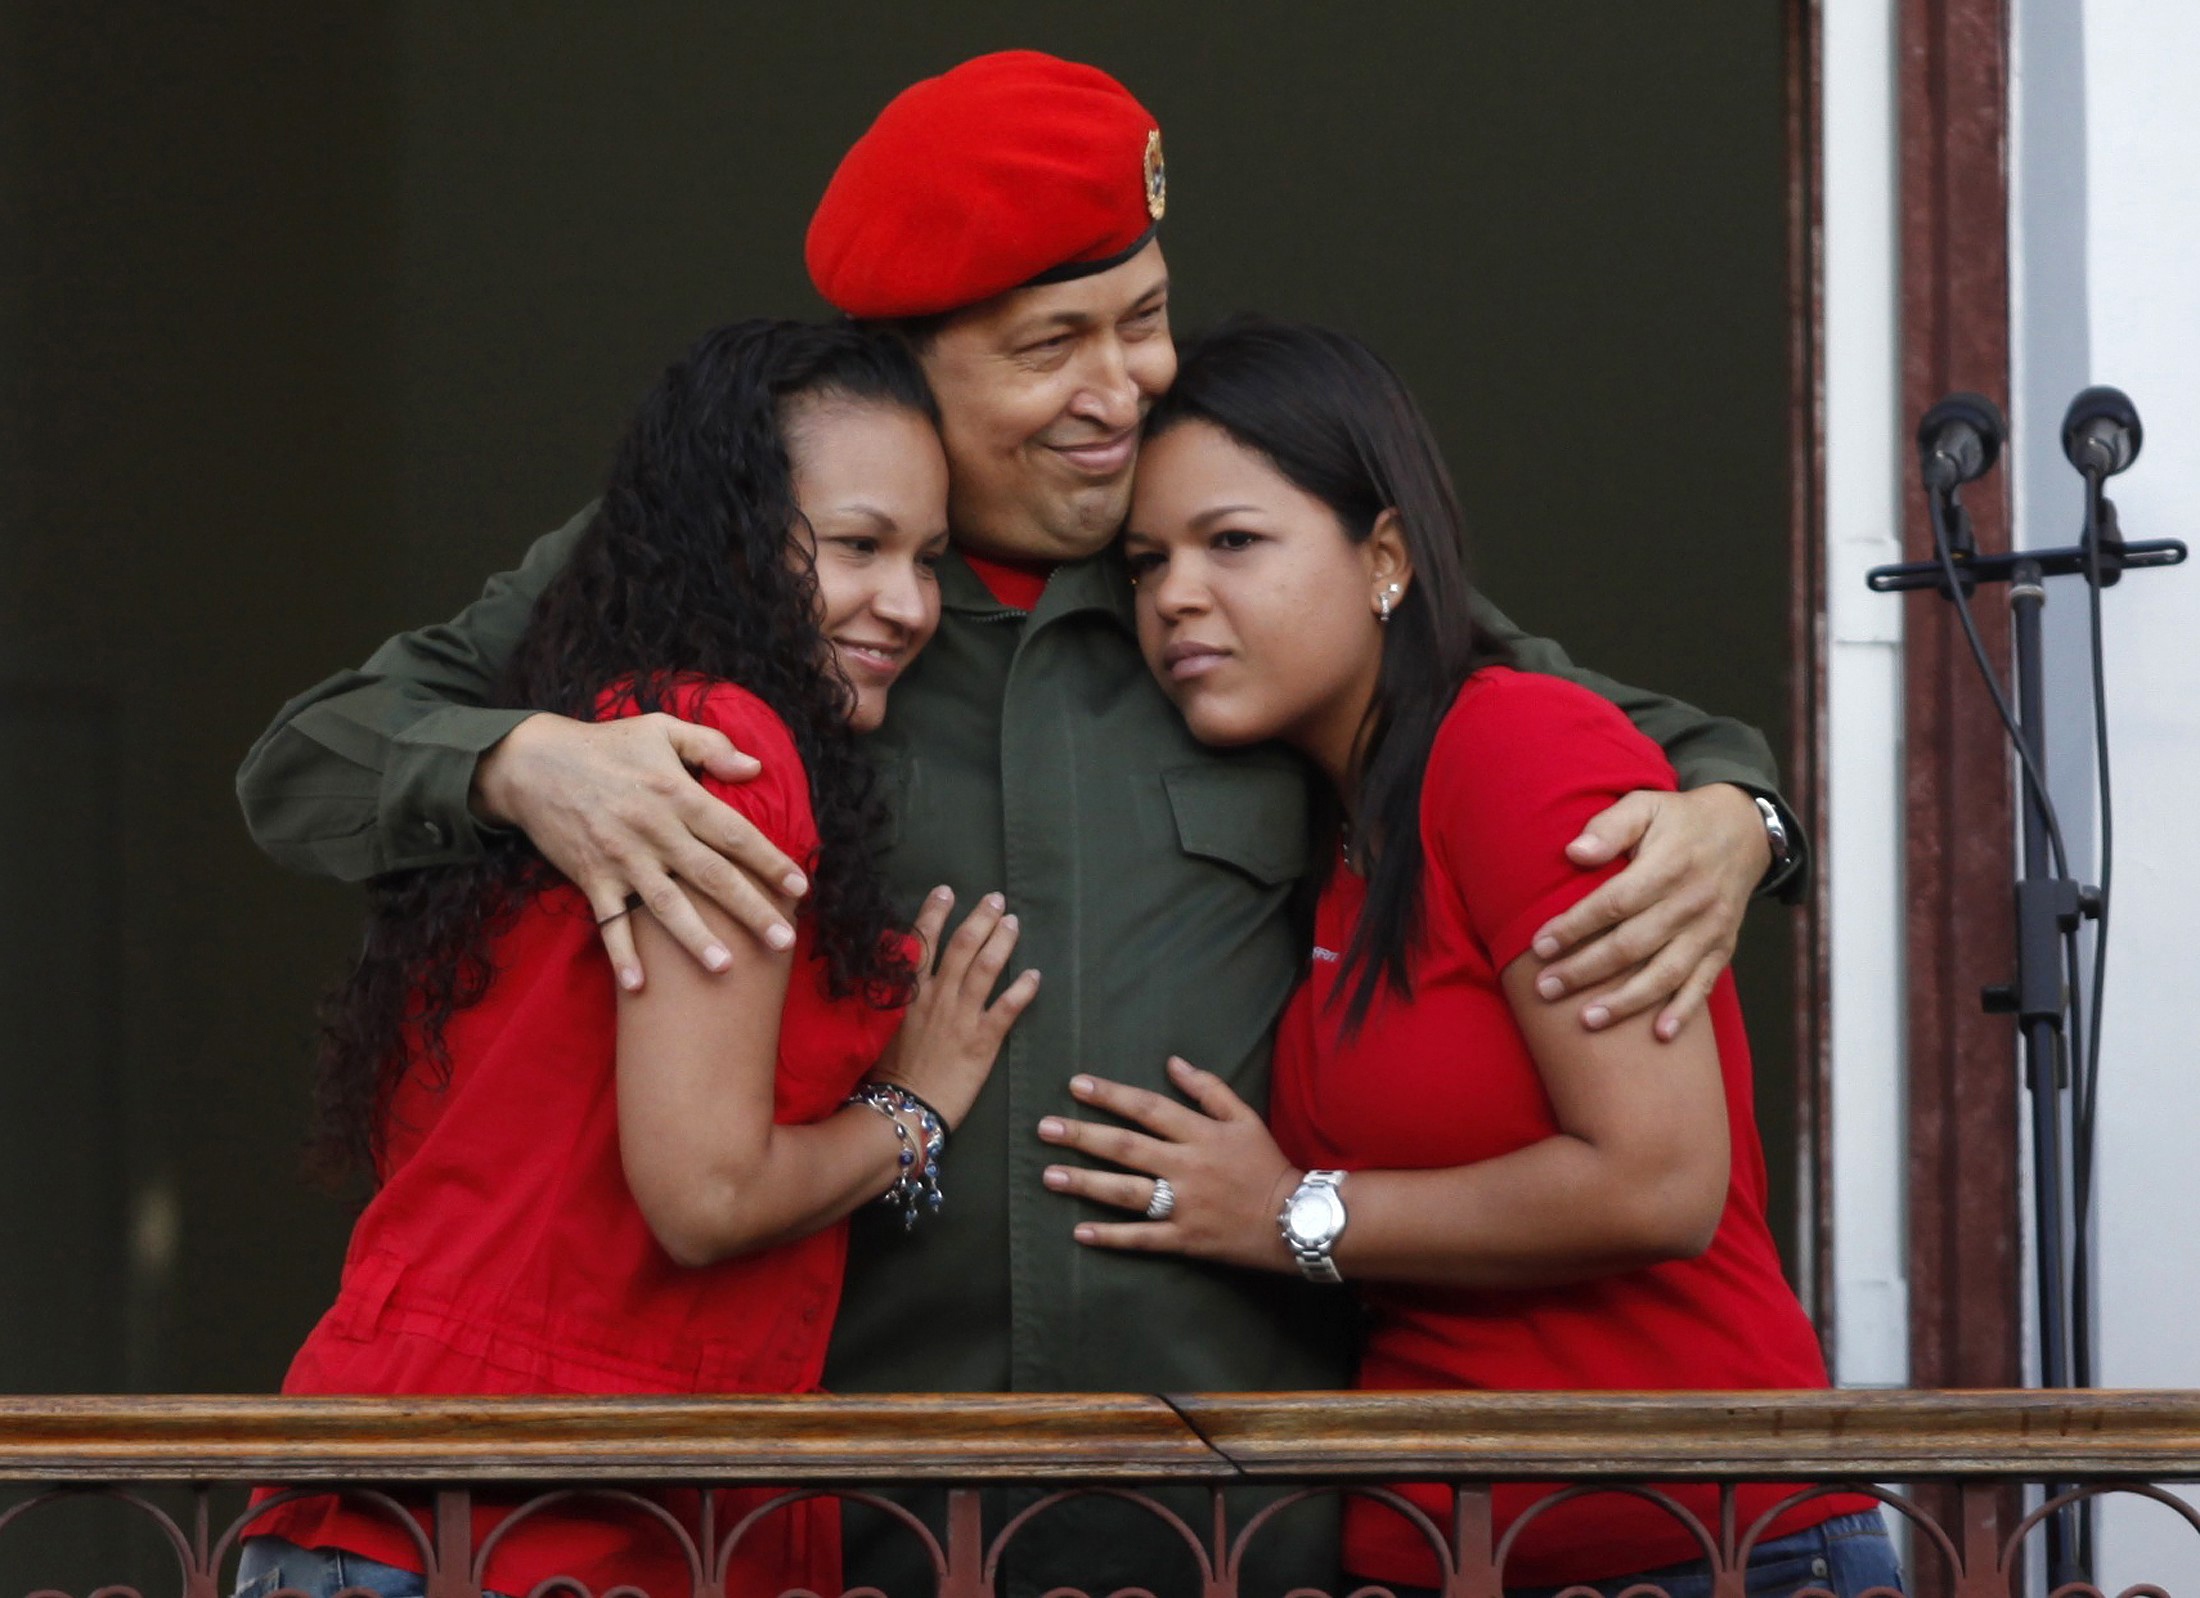 María Gabriela Chávez: Hasta siempre papito mío